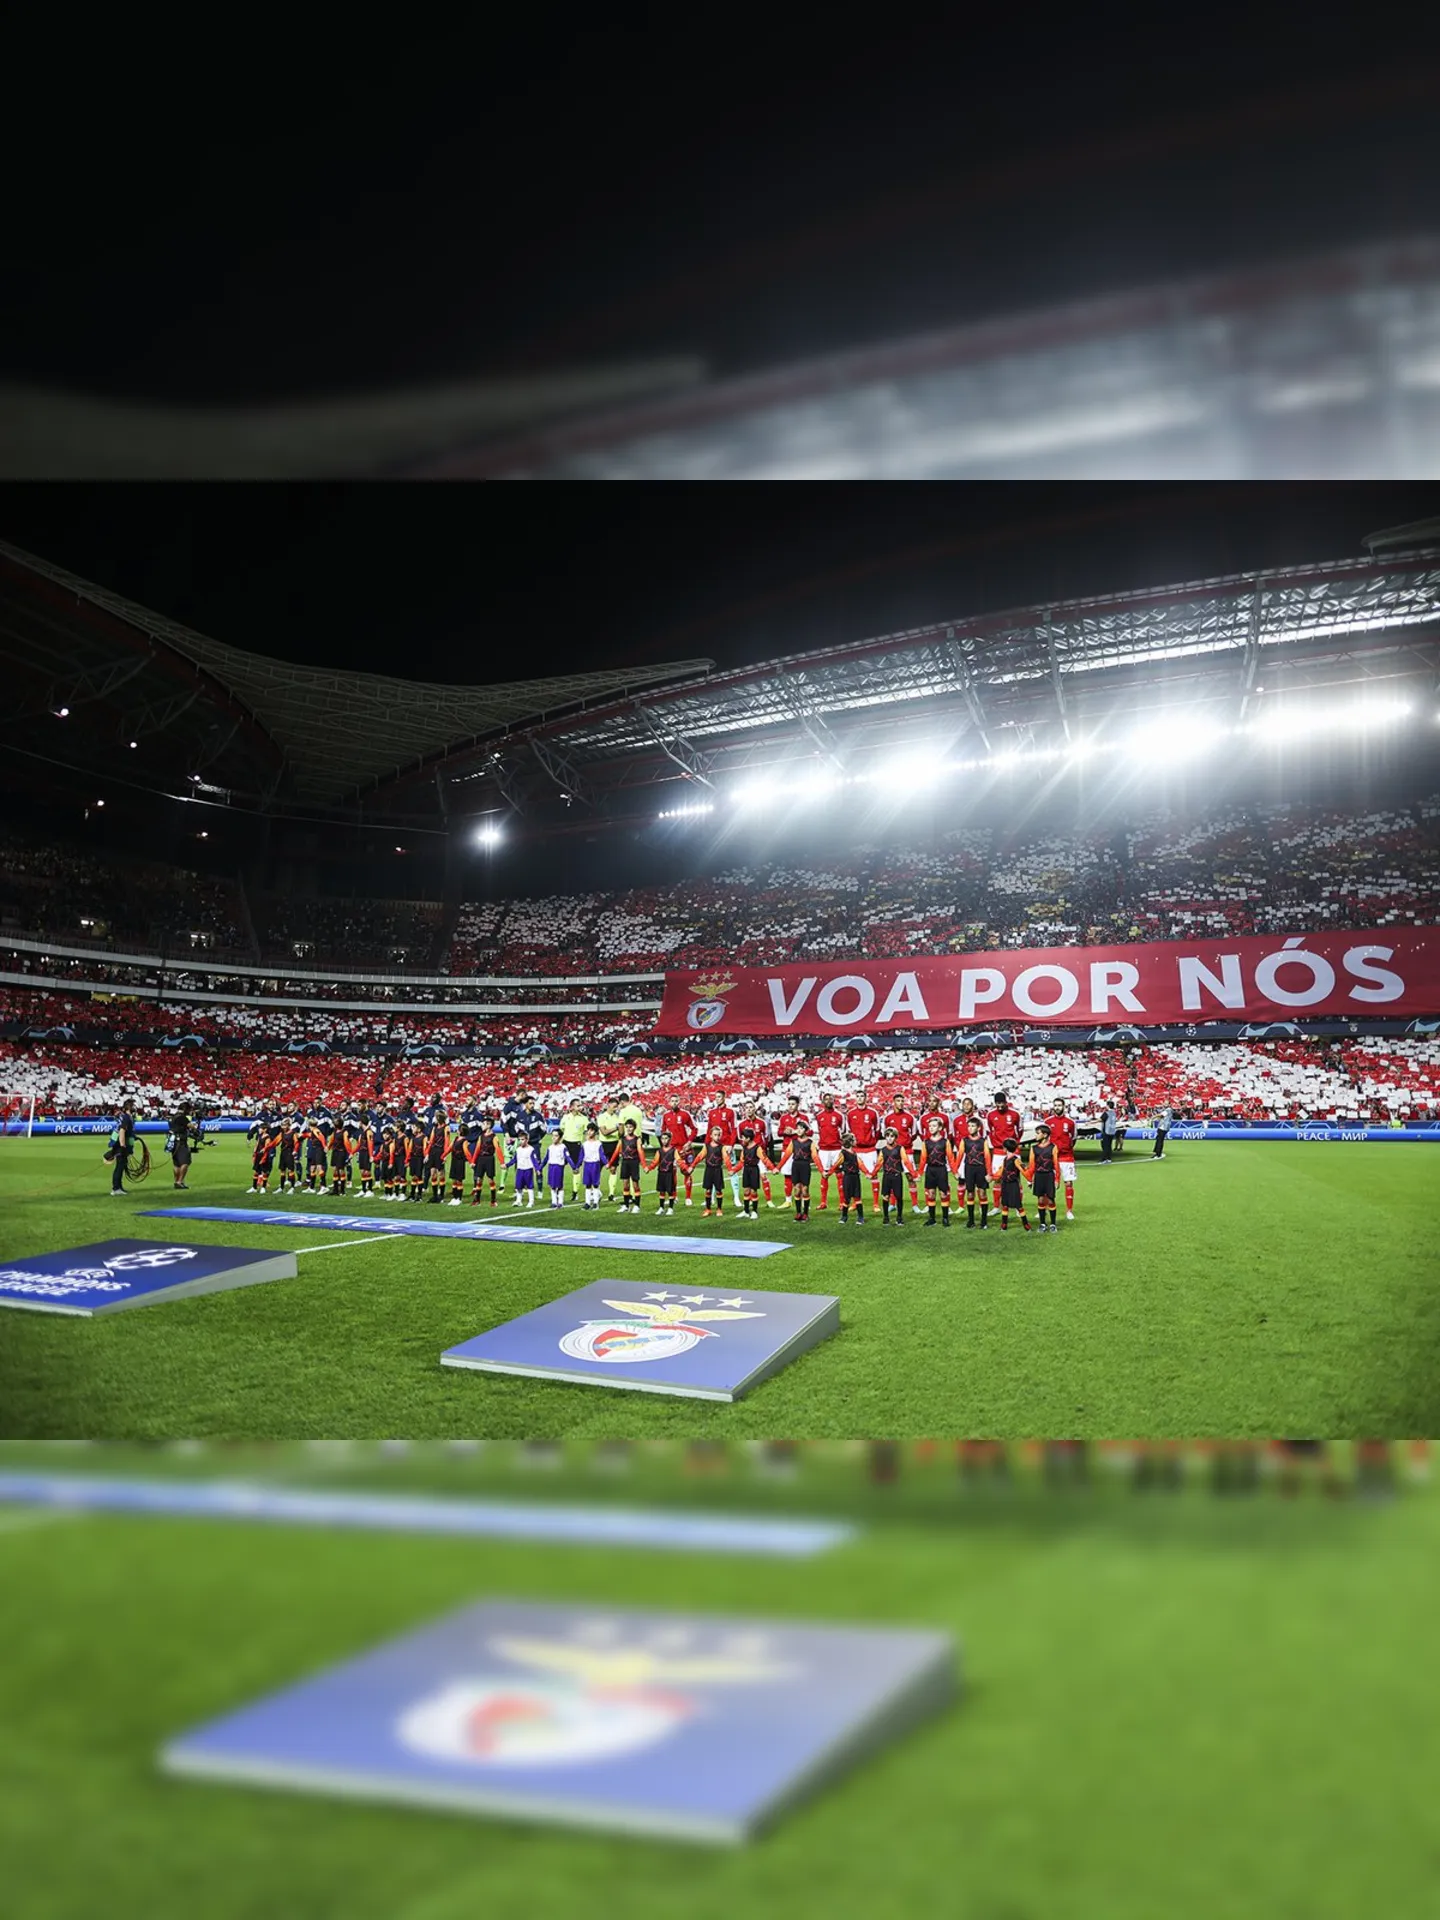 Torcida do Benfica fez linda festa de recepção e apoiou durante todo o jogo